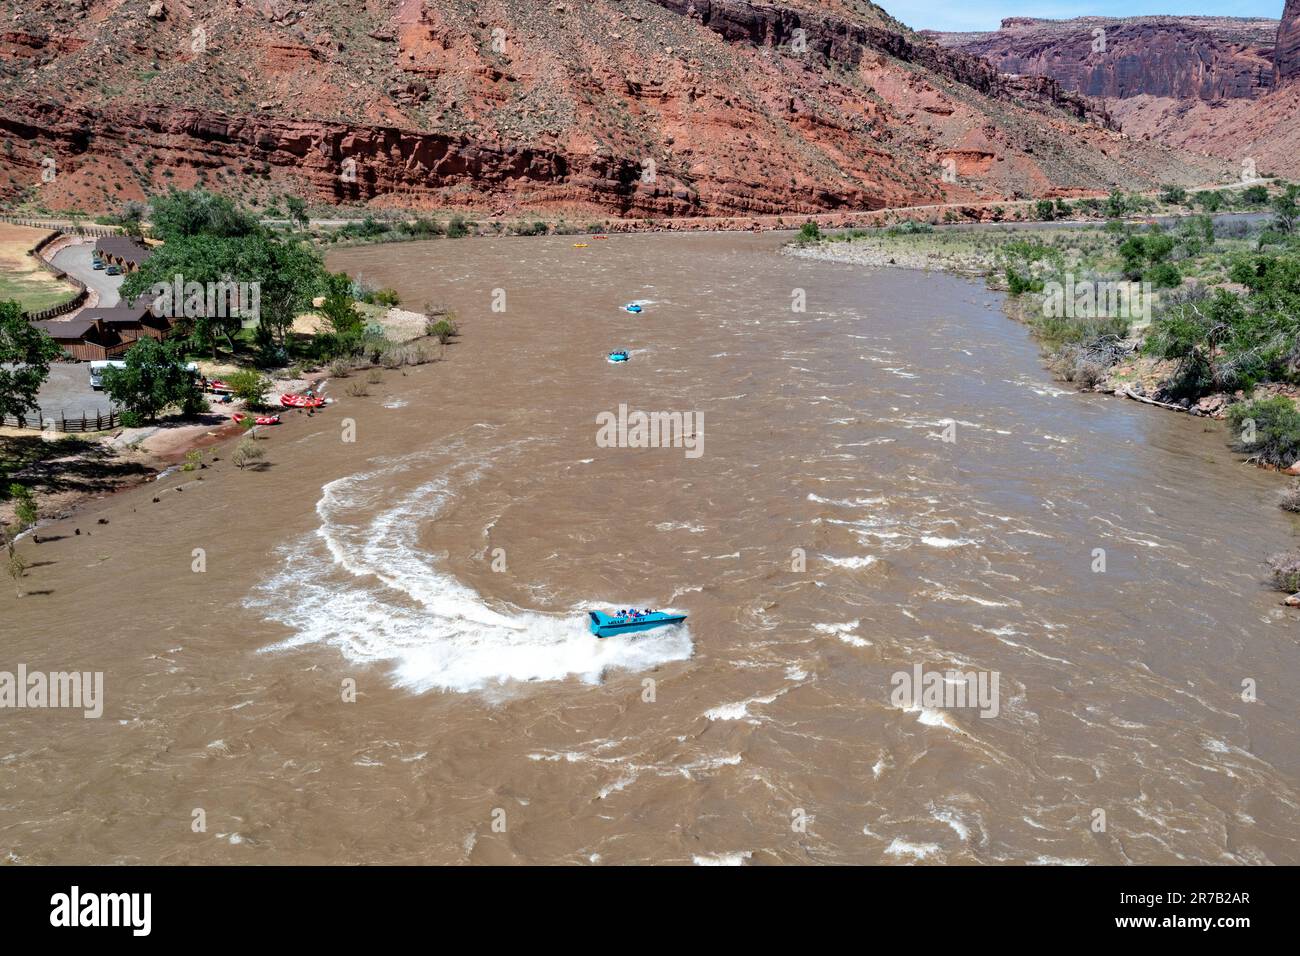 Touristes lors d'une excursion en jet boat à White's Rapid sur le fleuve Colorado en haute mer. Moab, Utah. Banque D'Images